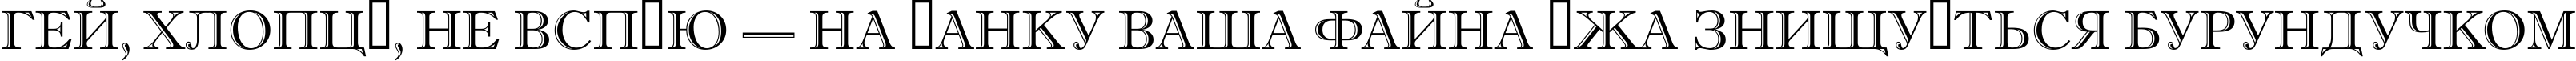 Пример написания шрифтом a_AntiqueTitulGr текста на украинском